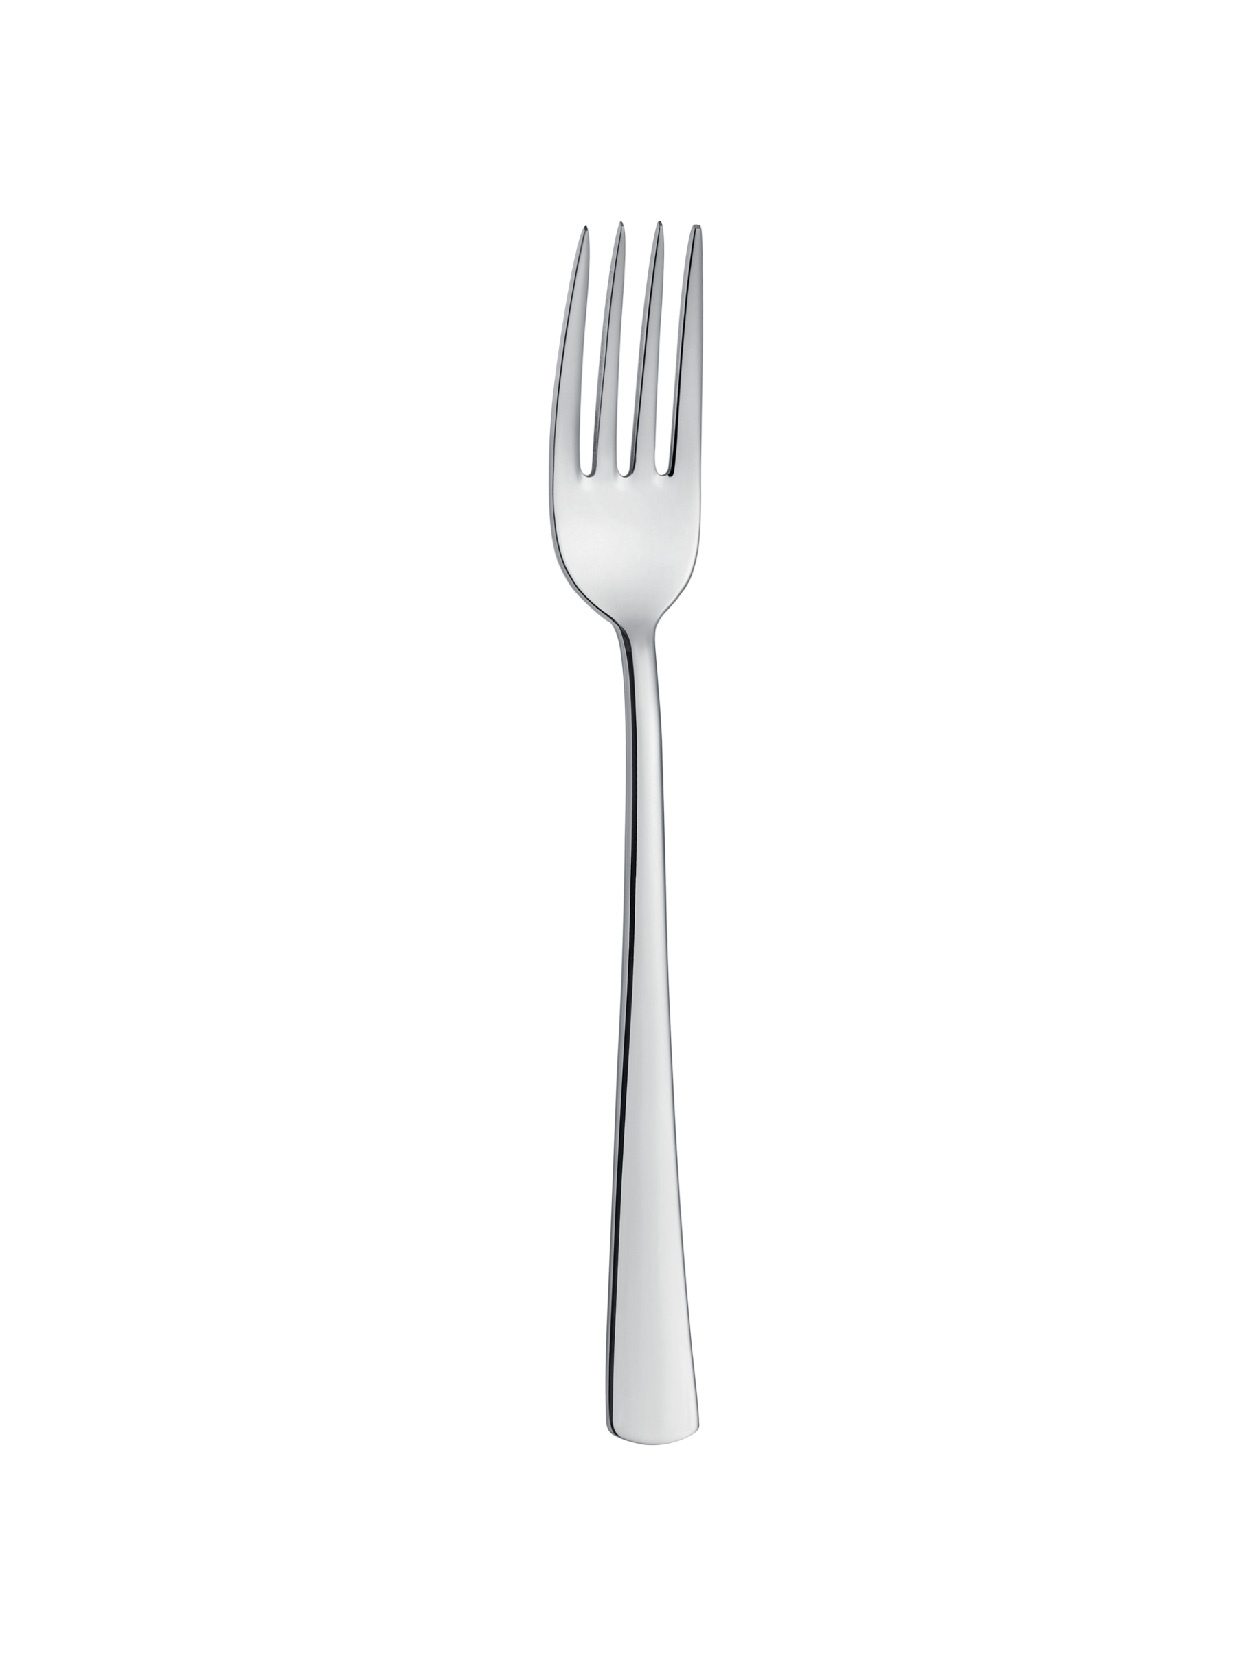 Halley - Plain - Dinner Fork (6 Pcs)